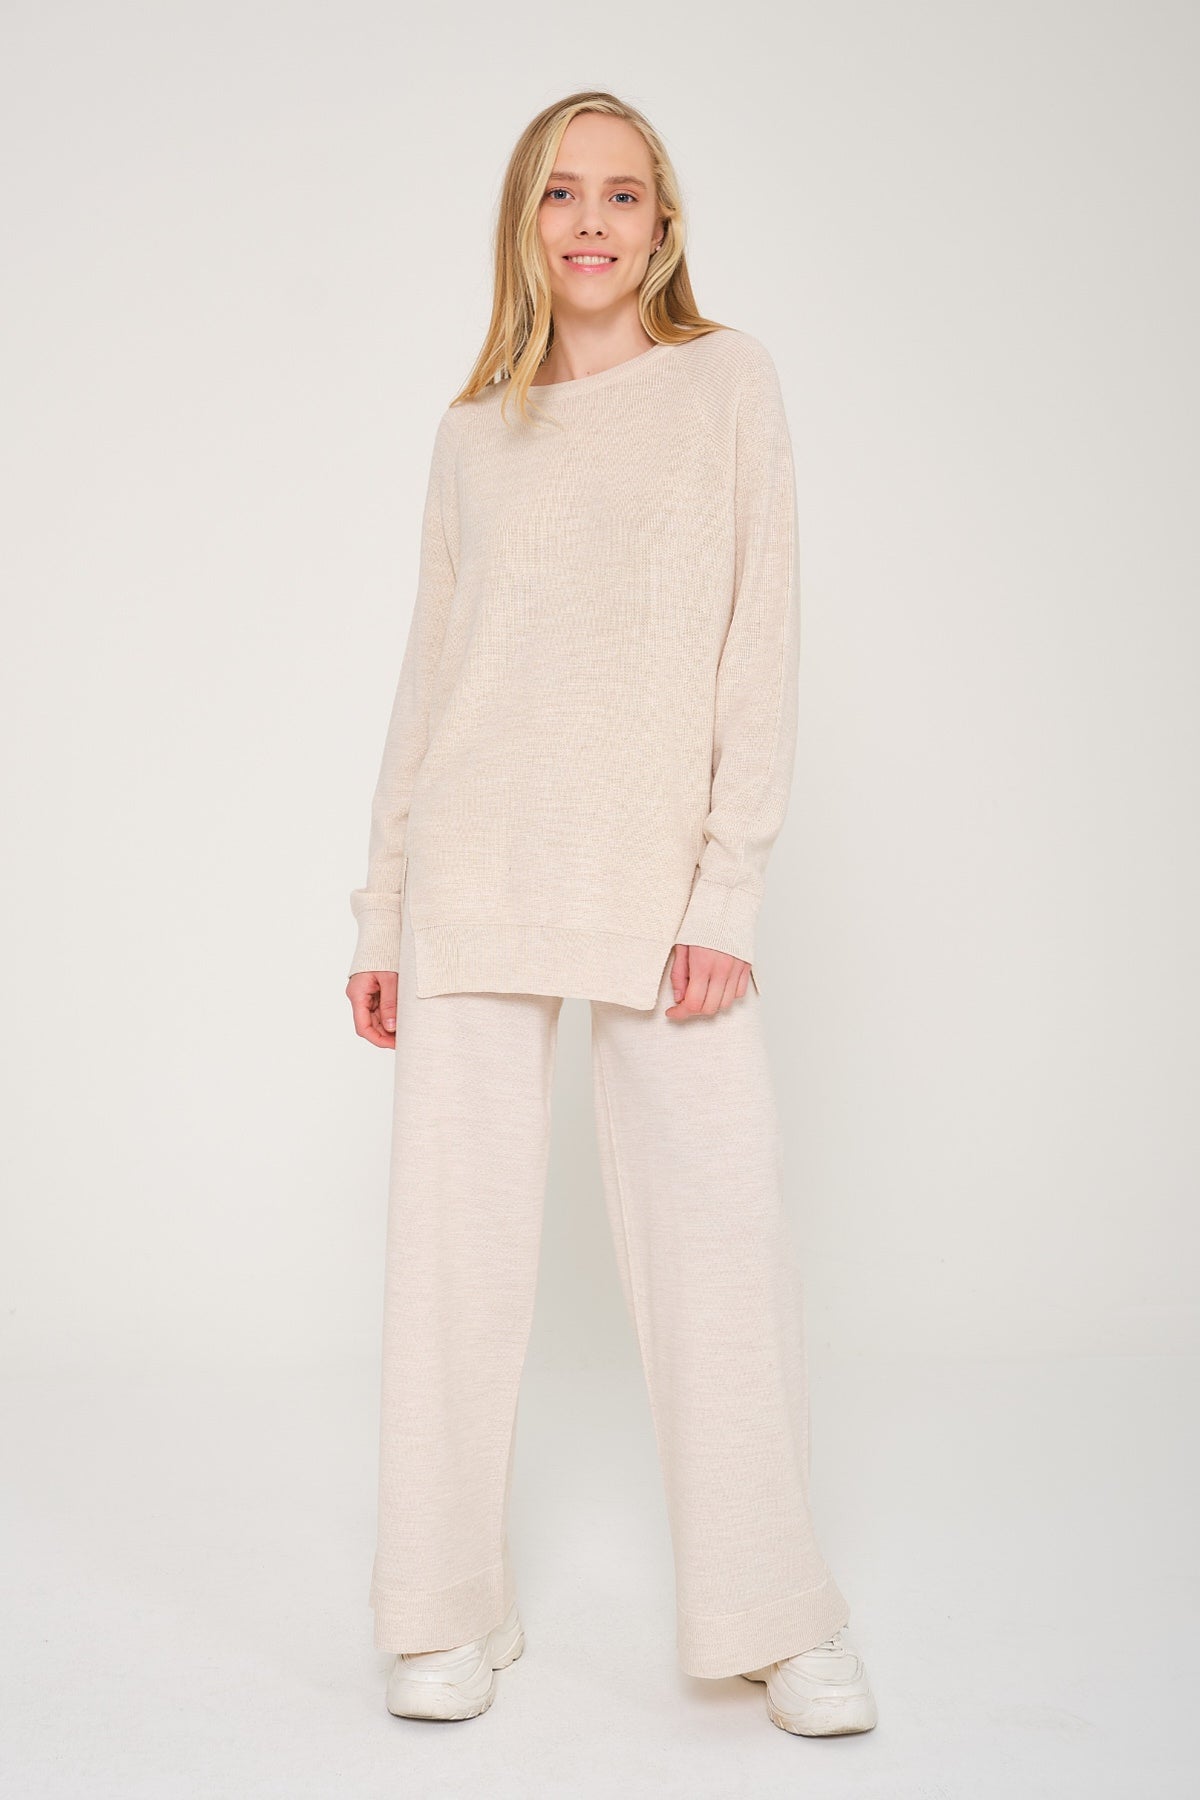 Beige Knit Sweater & Pants Set - ADAMO